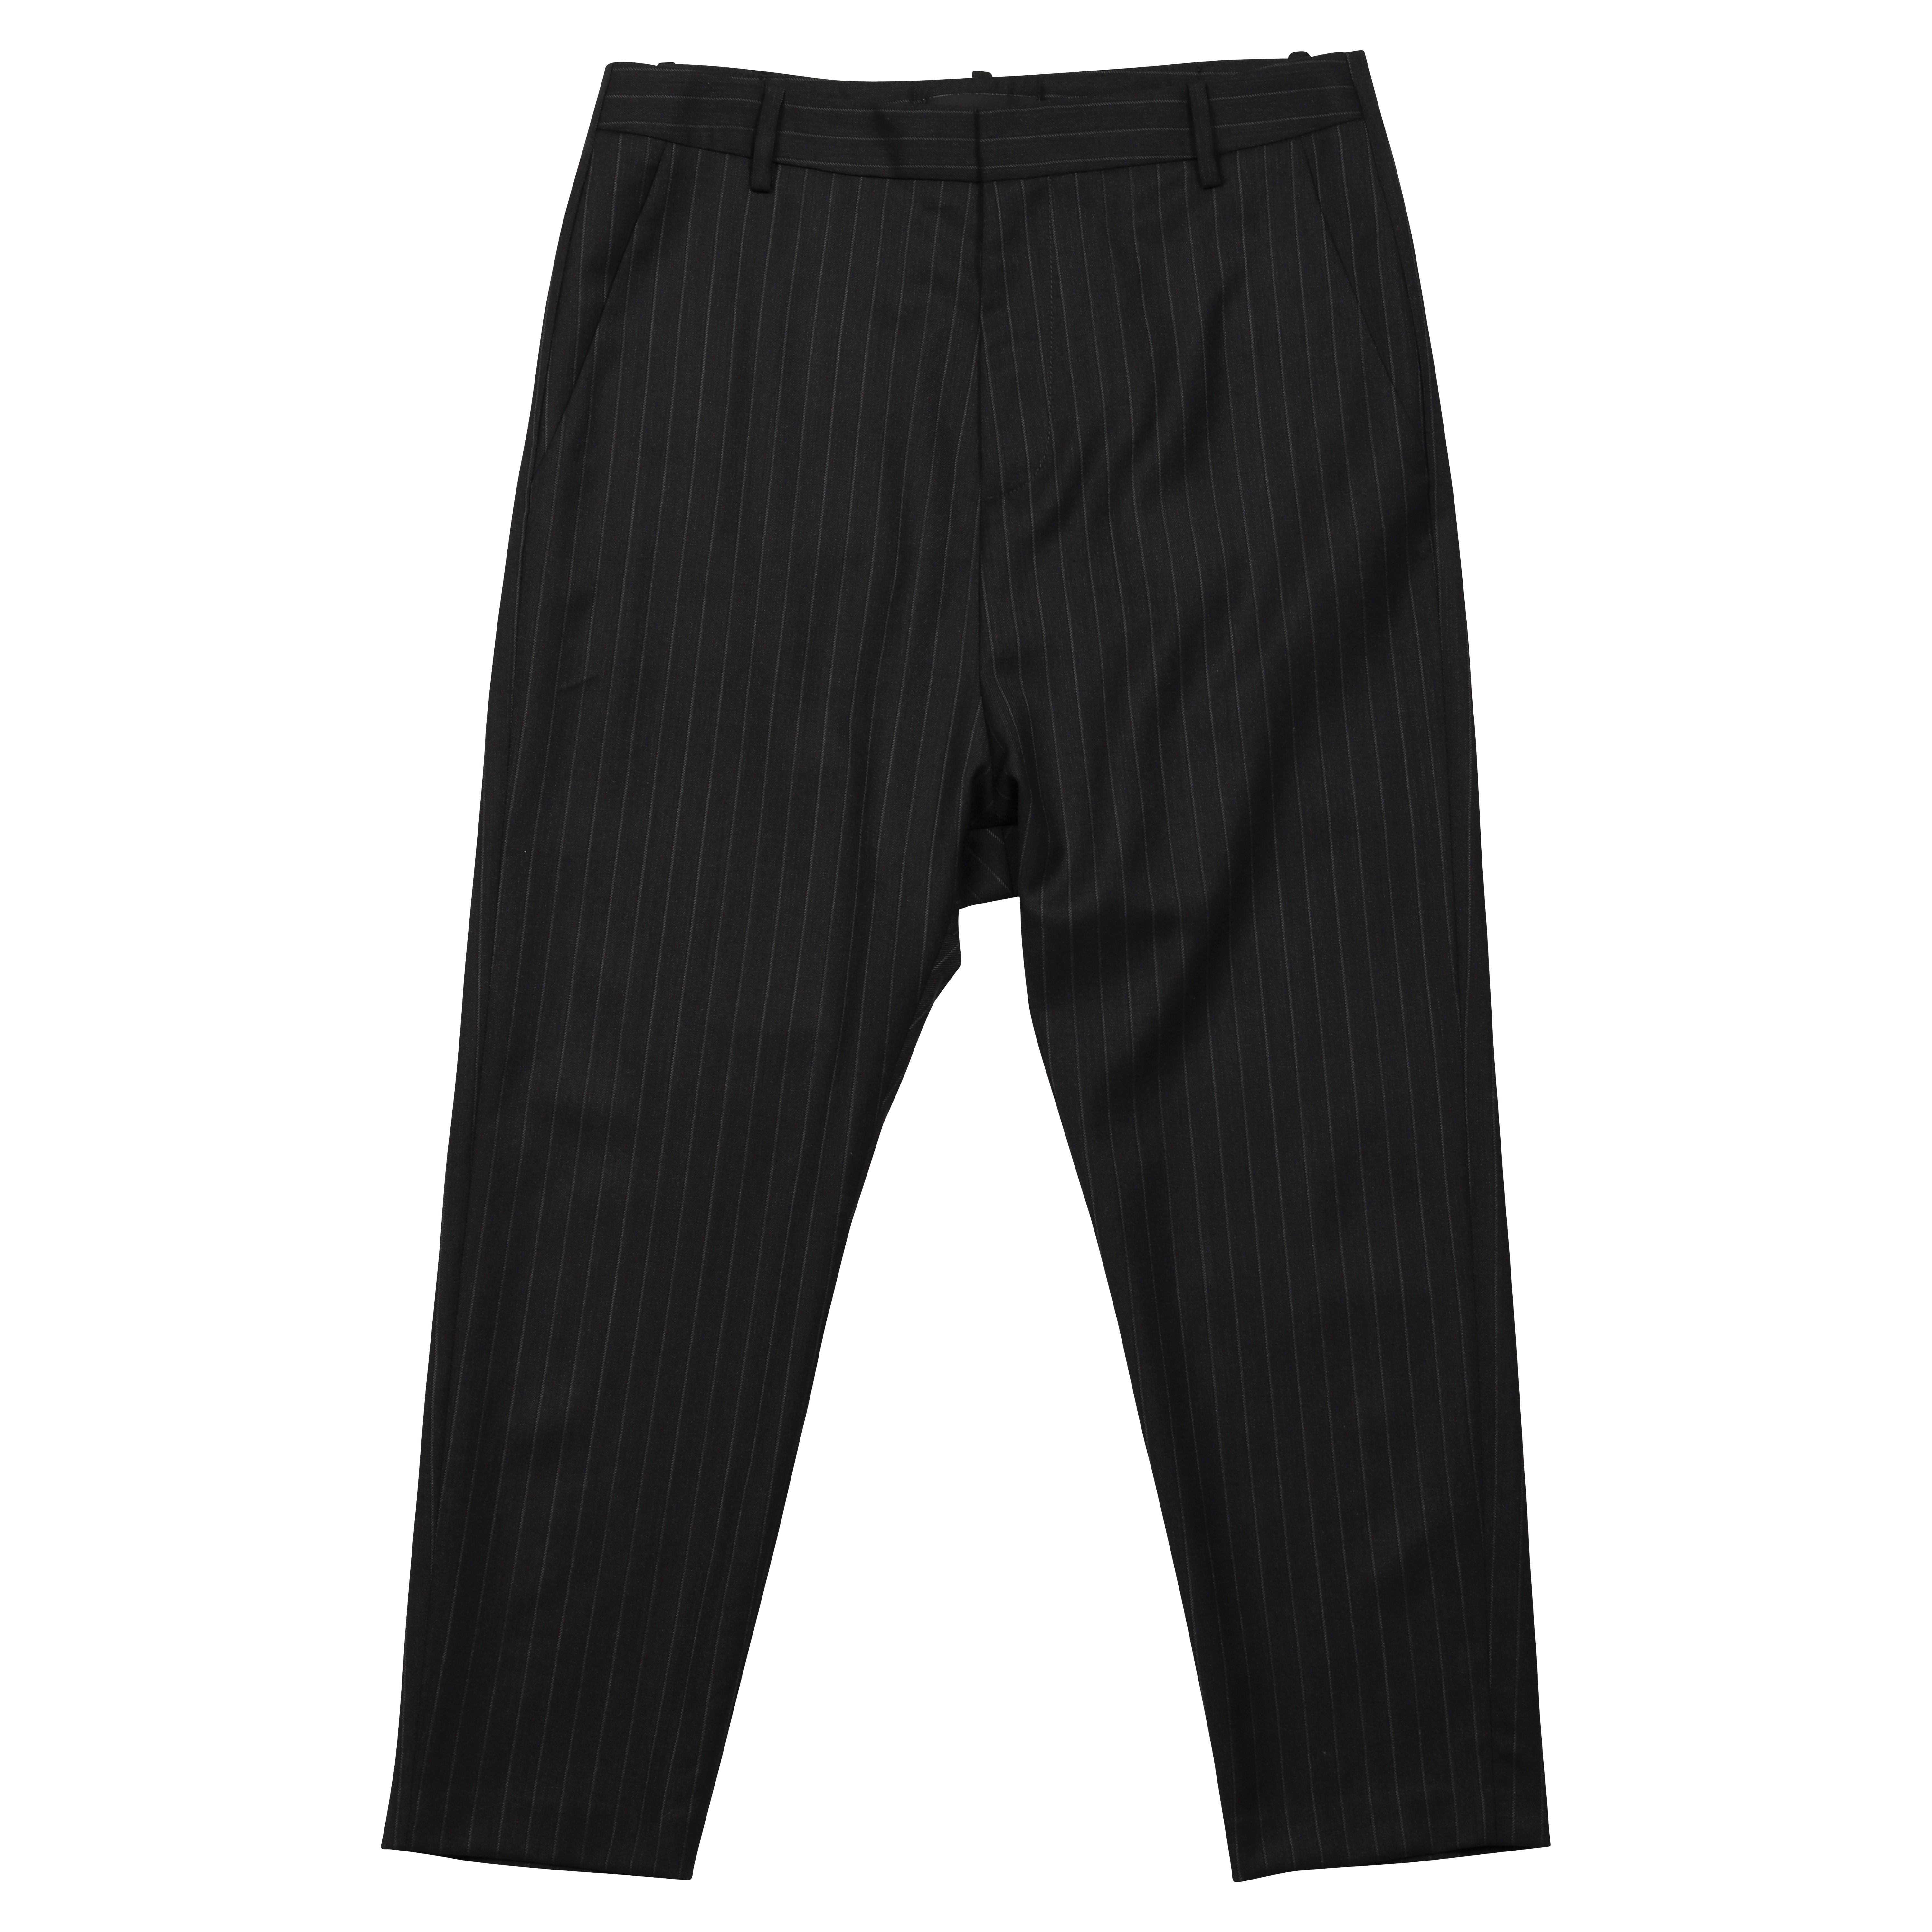 Nili Lotan Paris Wool Pant Charcoal Striped 0/XS